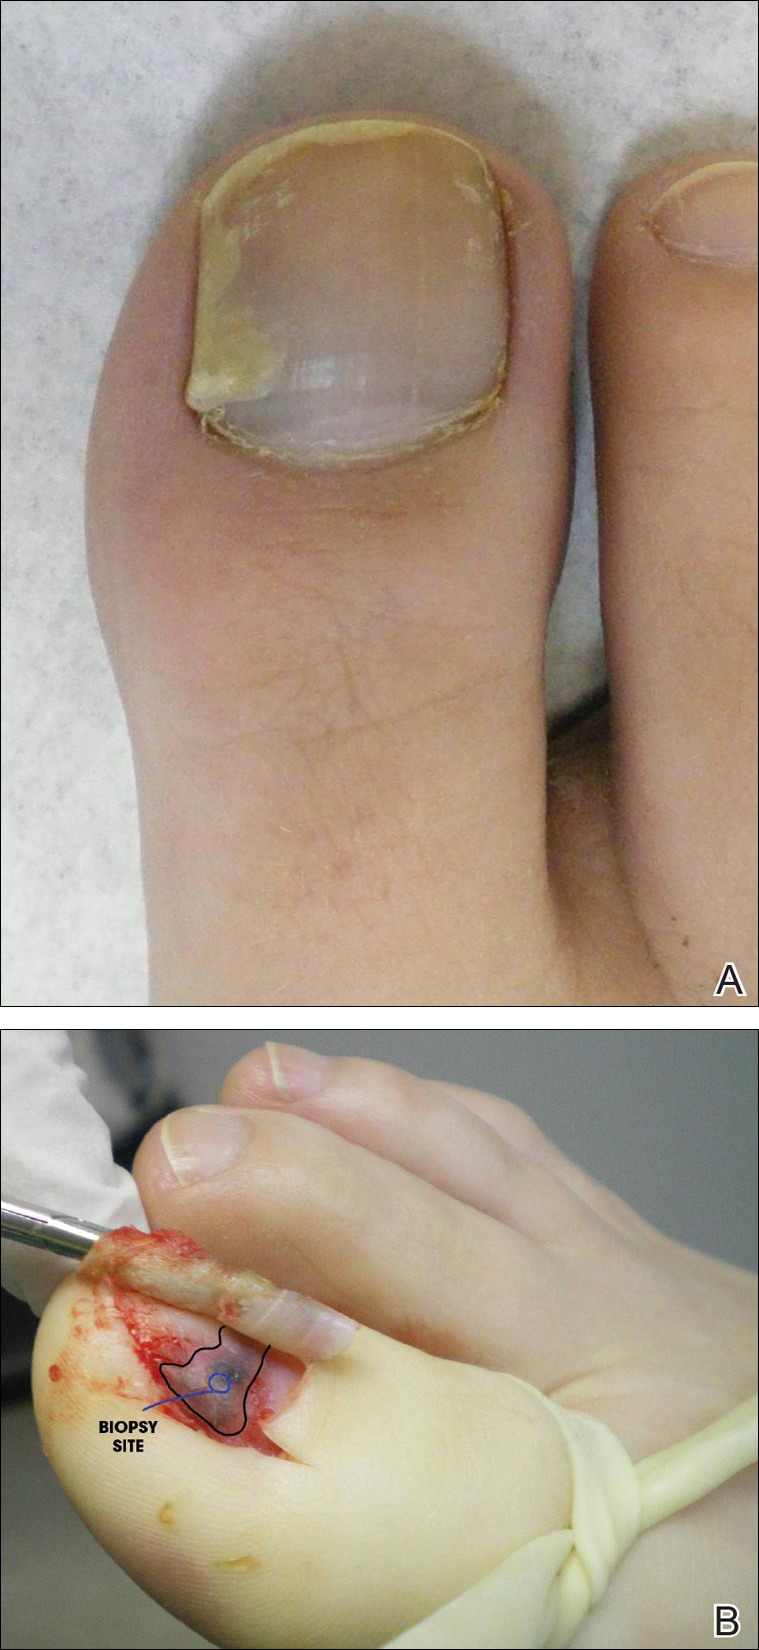 Subungual Onycholemmal Cyst Of The Toenail Mimicking Subungual Melanoma Mdedge Dermatology